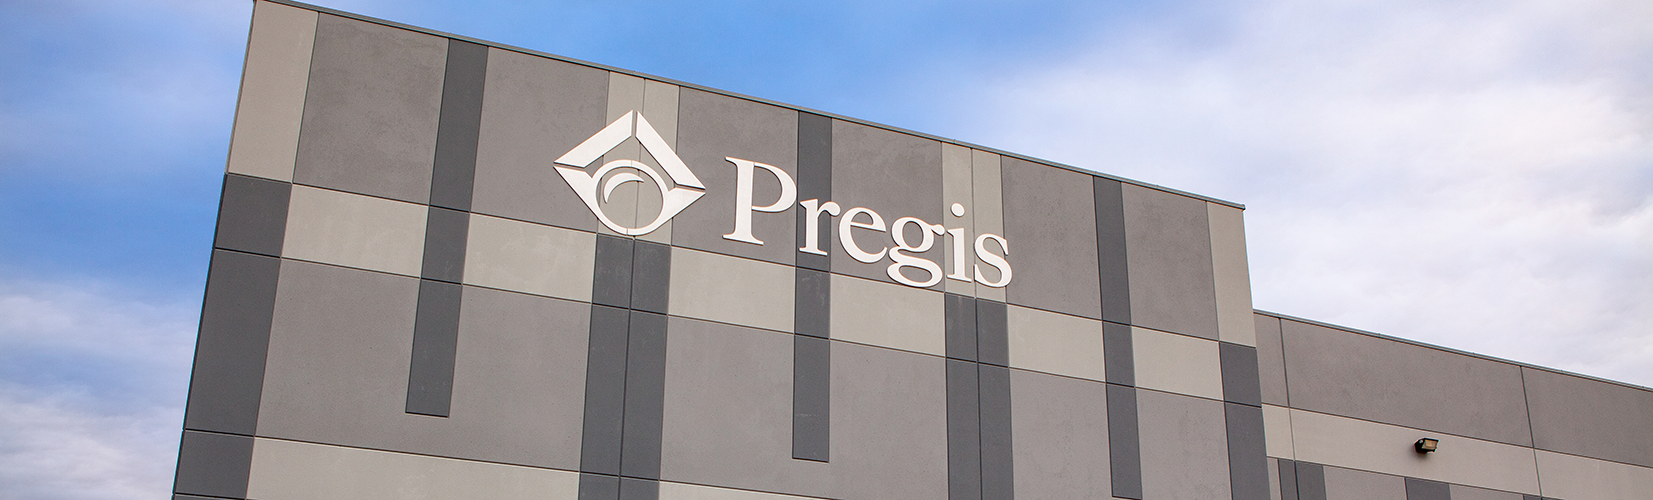 New Pregis facility